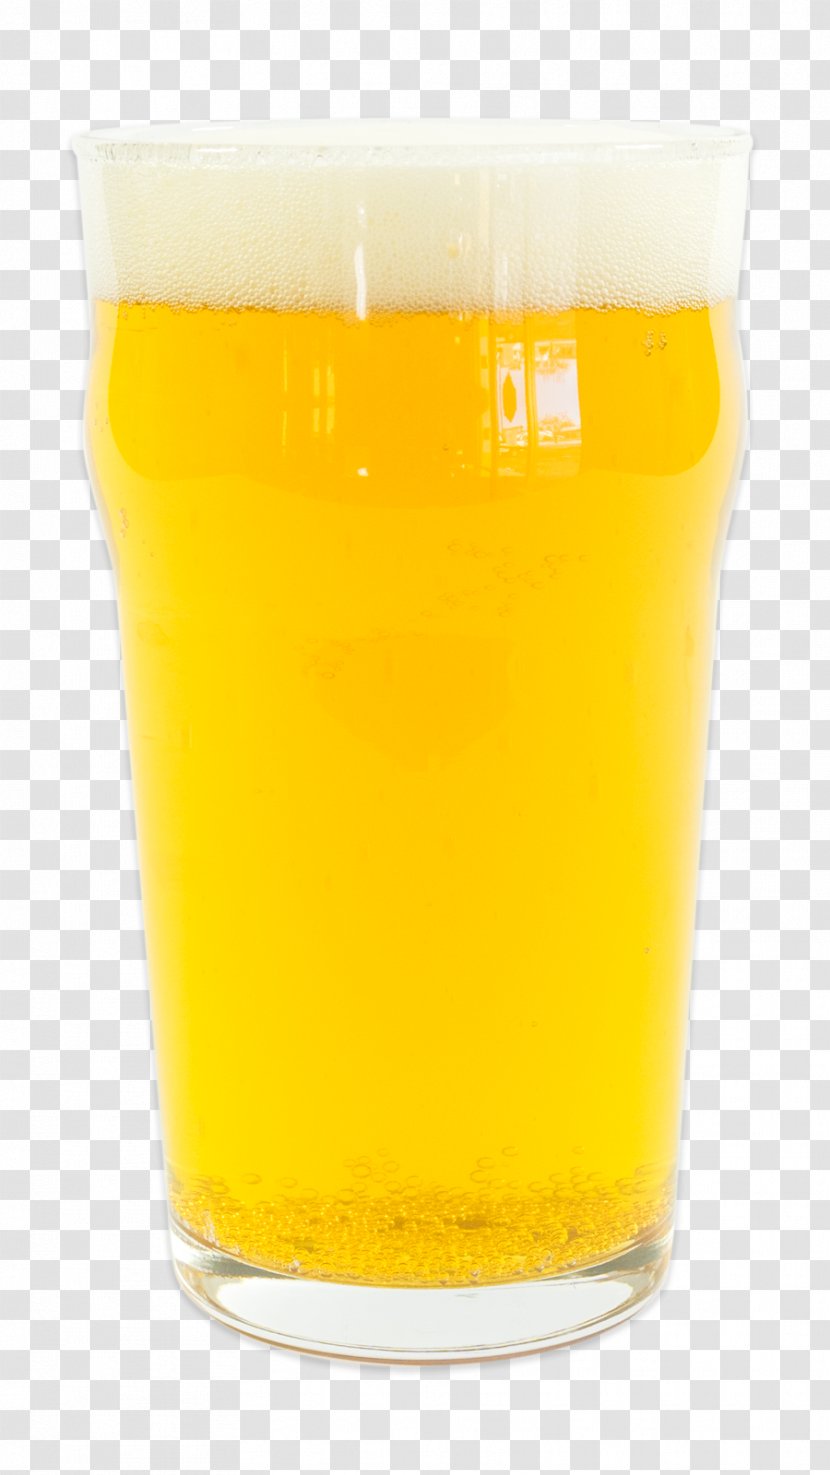 Orange Drink Juice Pint Glass Harvey Wallbanger Beer Transparent PNG